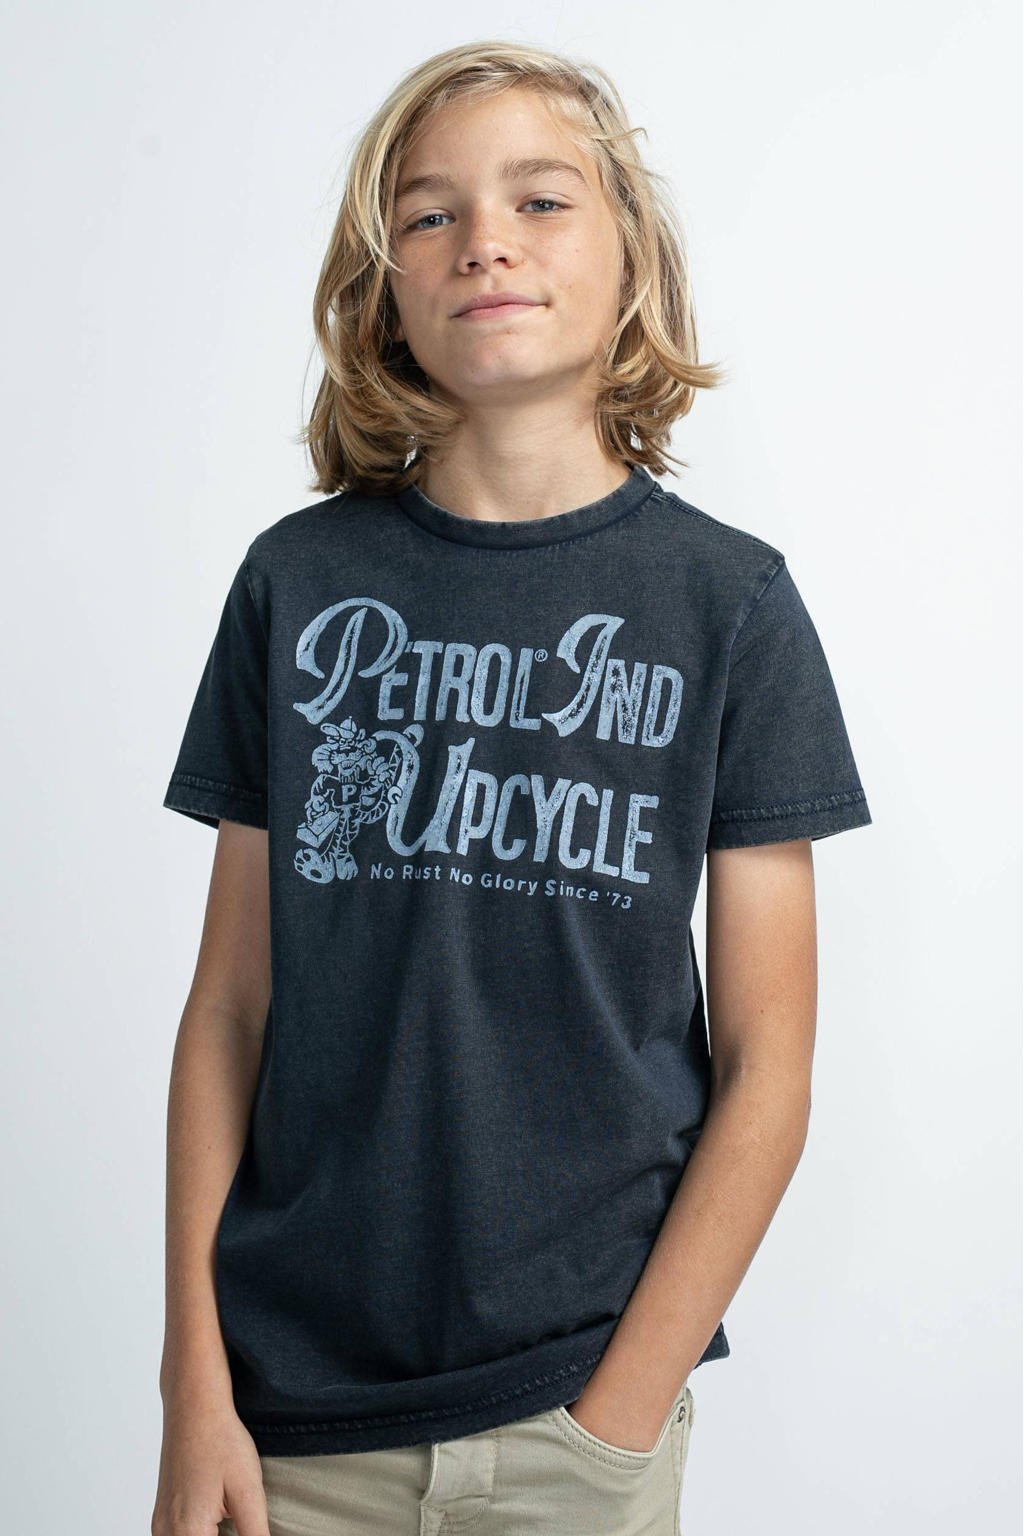 Blauwe jongens Petrol Industries T-shirt van katoen met printopdruk, korte mouwen en ronde hals